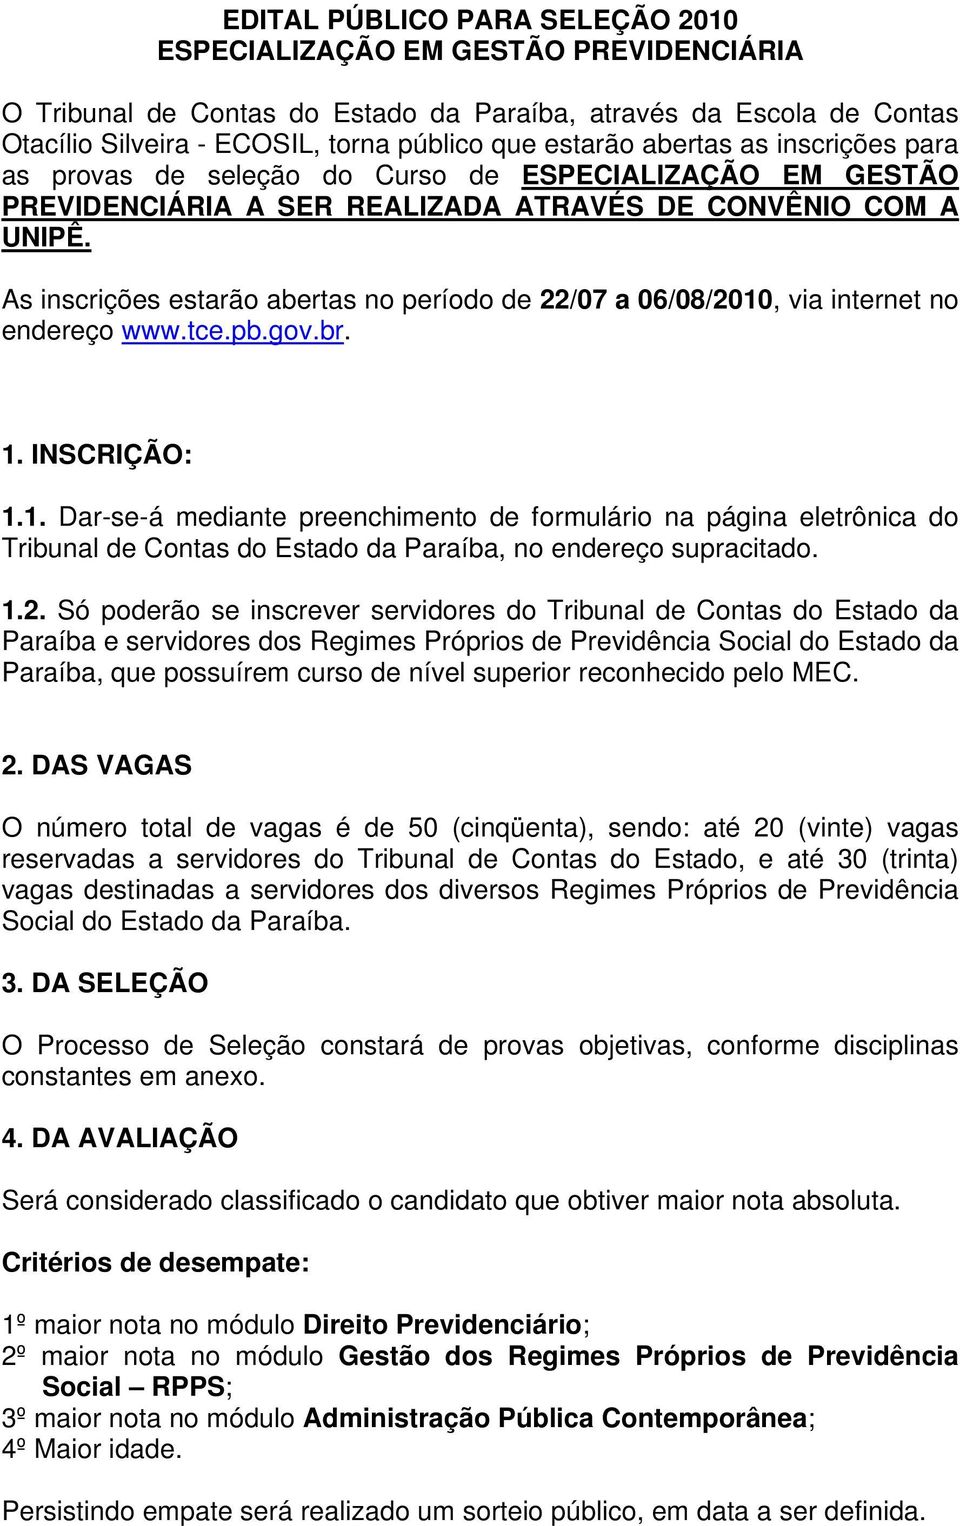 As inscrições estarão abertas no período de 22/07 a 06/08/2010, via internet no endereço www.tce.pb.gov.br. 1. INSCRIÇÃO: 1.1. Dar-se-á mediante preenchimento de formulário na página eletrônica do Tribunal de Contas do Estado da Paraíba, no endereço supracitado.